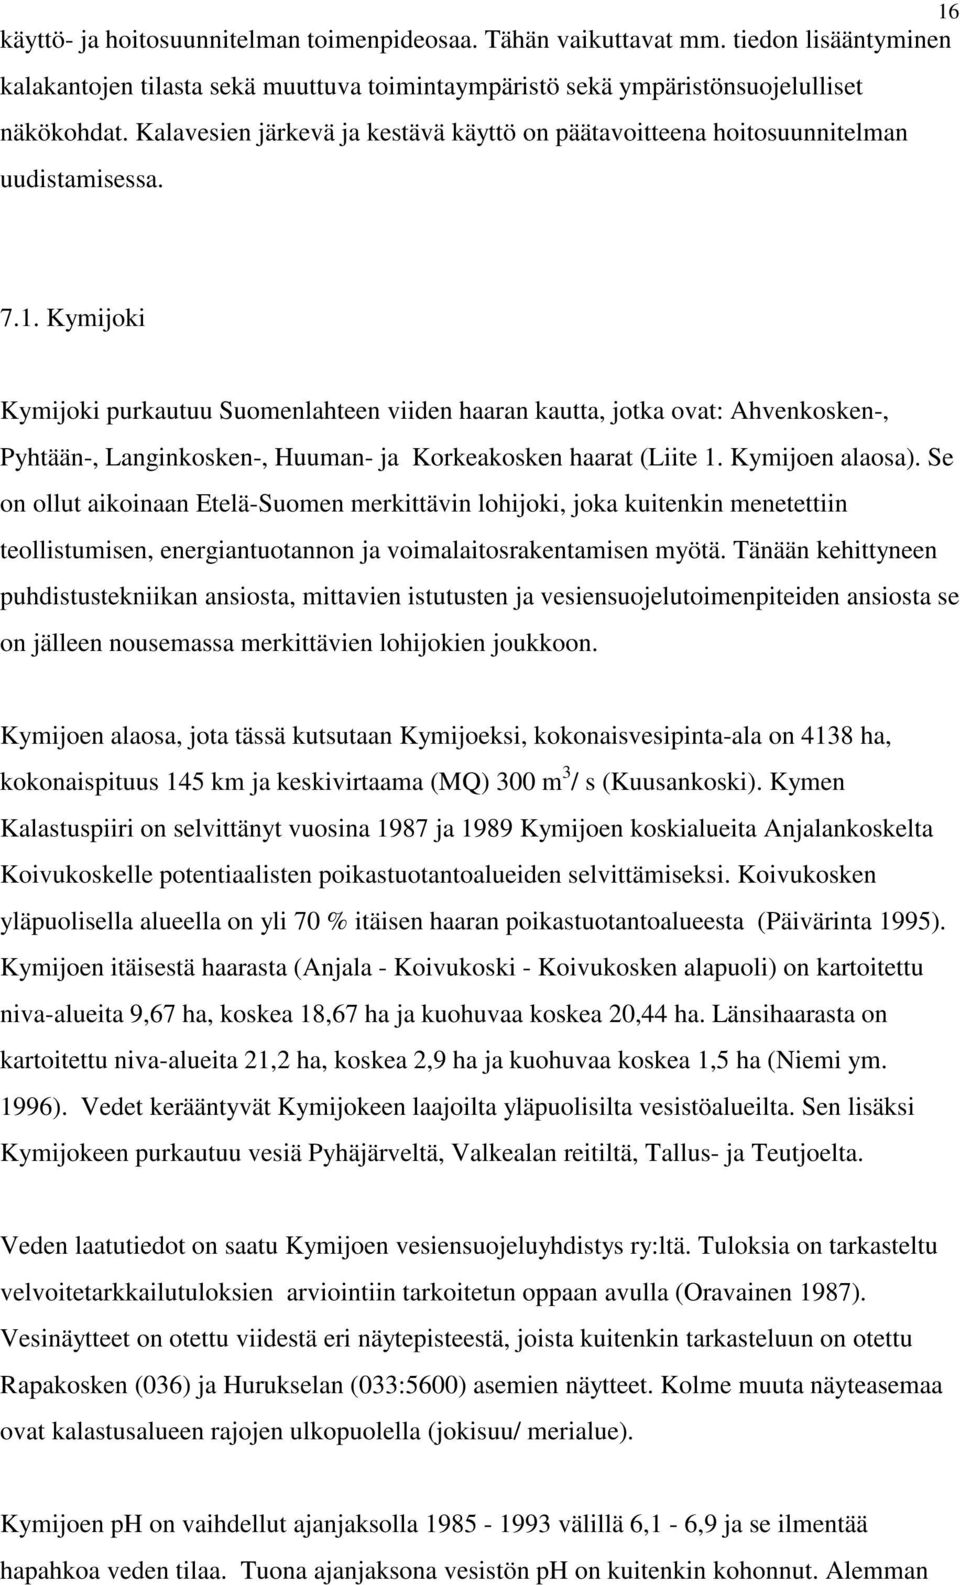 Kymijoki Kymijoki purkautuu Suomenlahteen viiden haaran kautta, jotka ovat: Ahvenkosken-, Pyhtään-, Langinkosken-, Huuman- ja Korkeakosken haarat (Liite 1. Kymijoen alaosa).